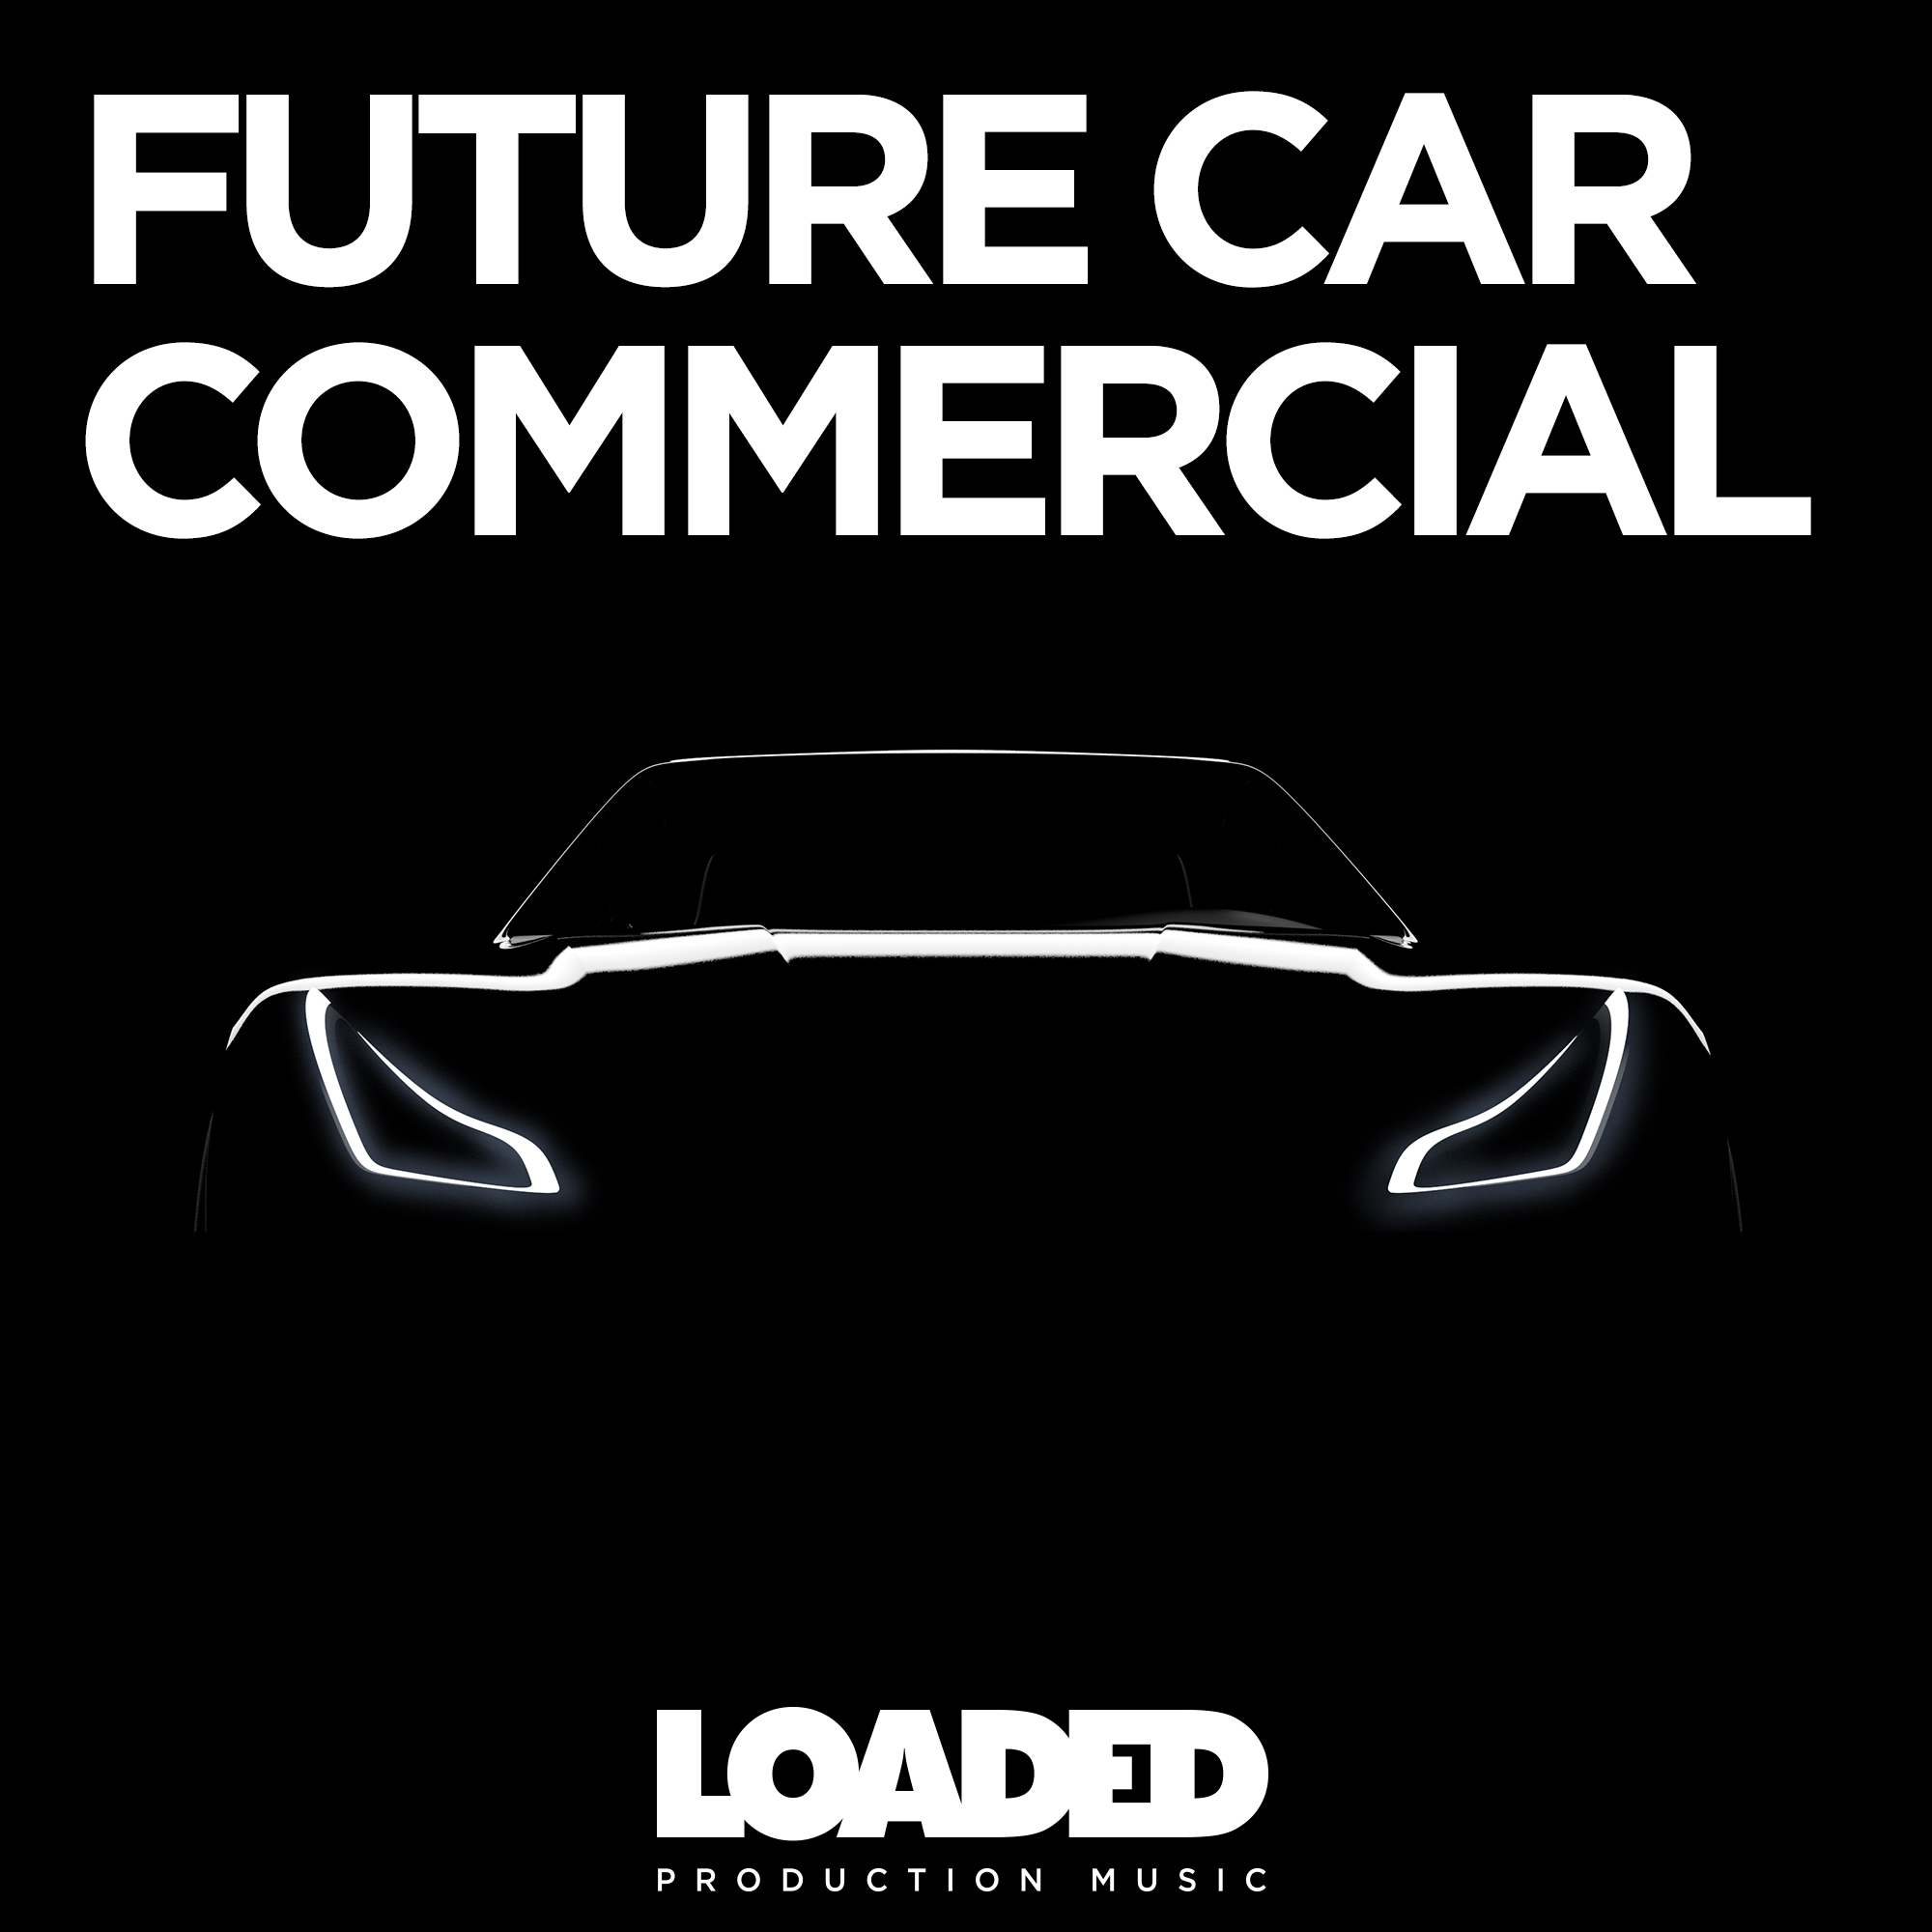 LPM 069 - Future Car Commercial - Album Cover